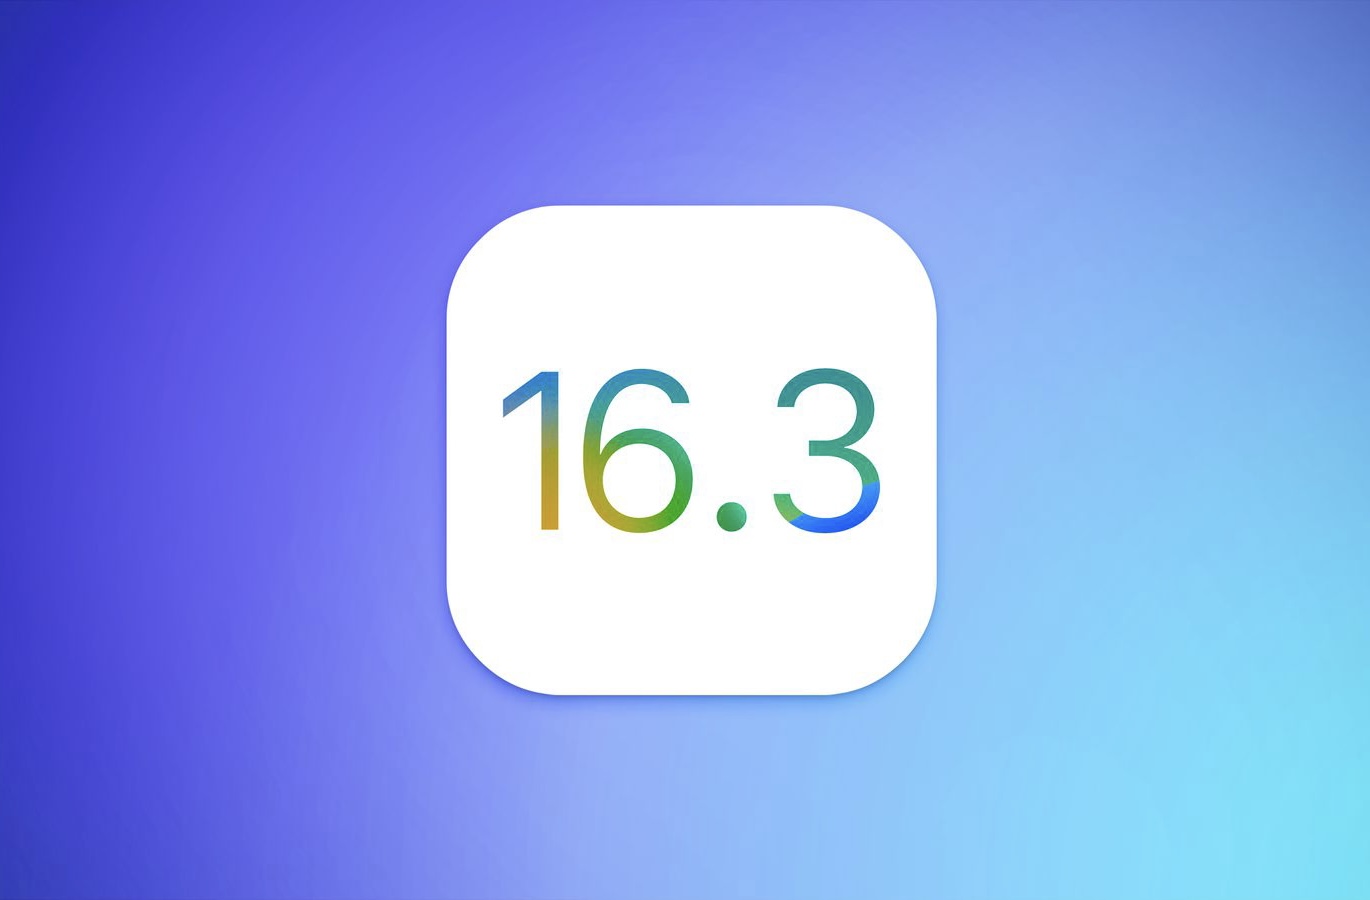 Вышла iOS 16.3 beta 2 для разработчиков